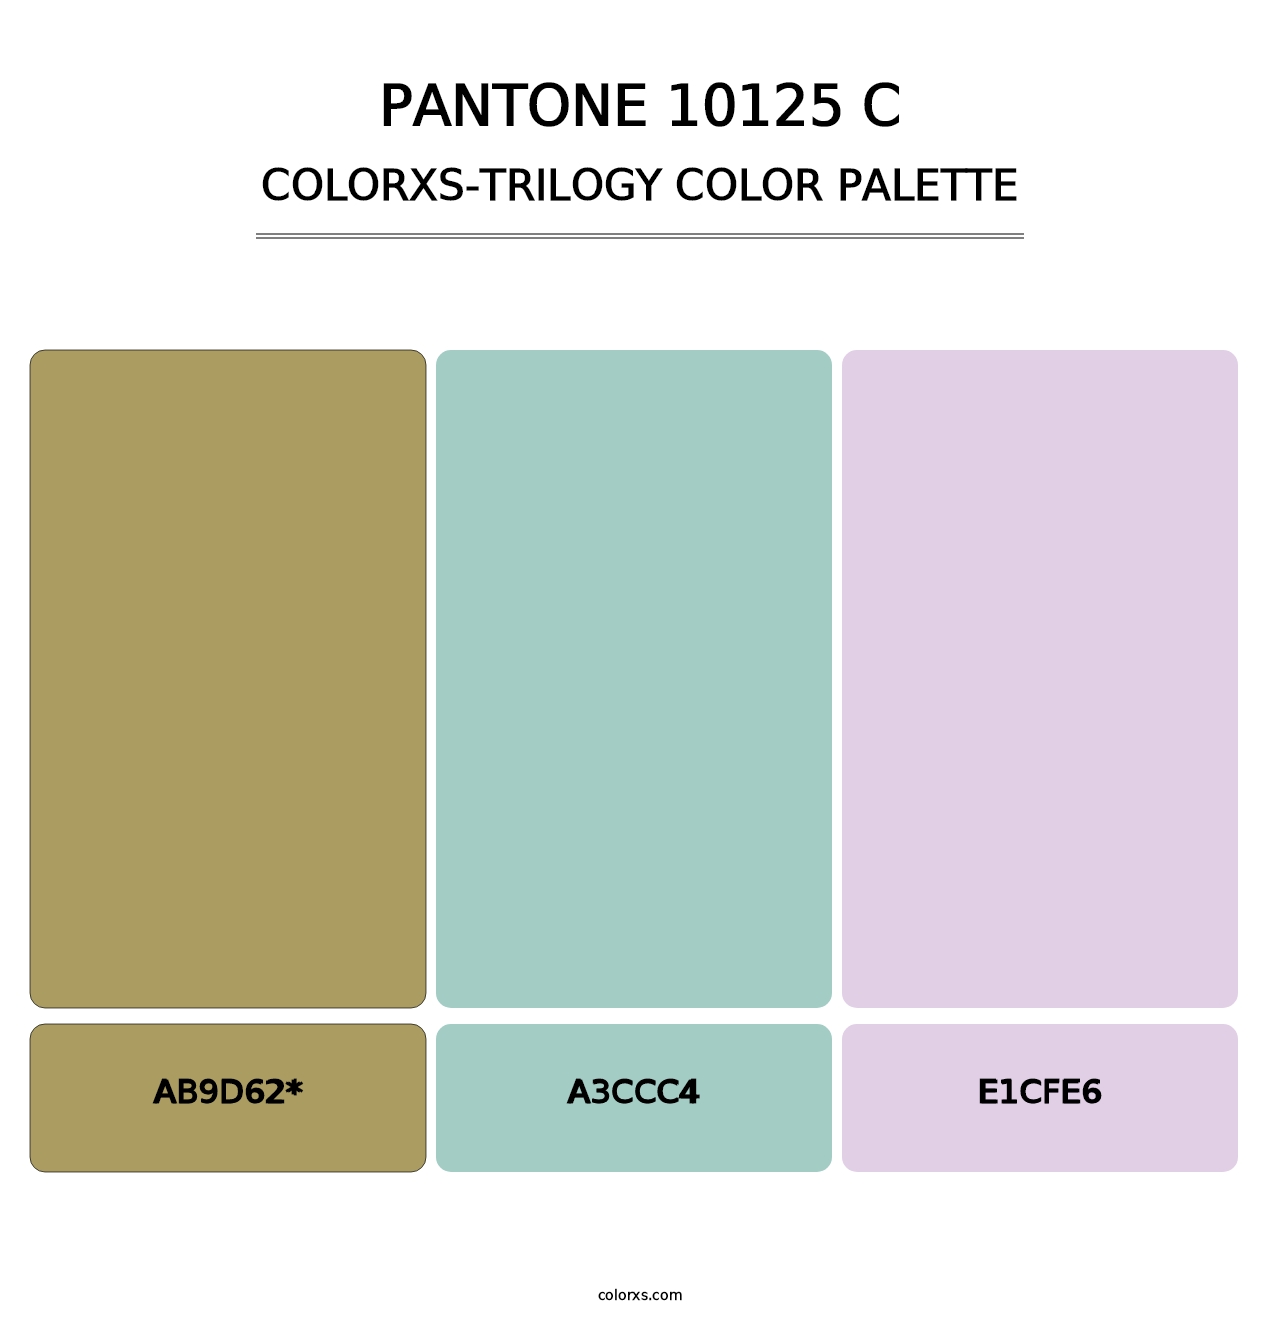 PANTONE 10125 C - Colorxs Trilogy Palette